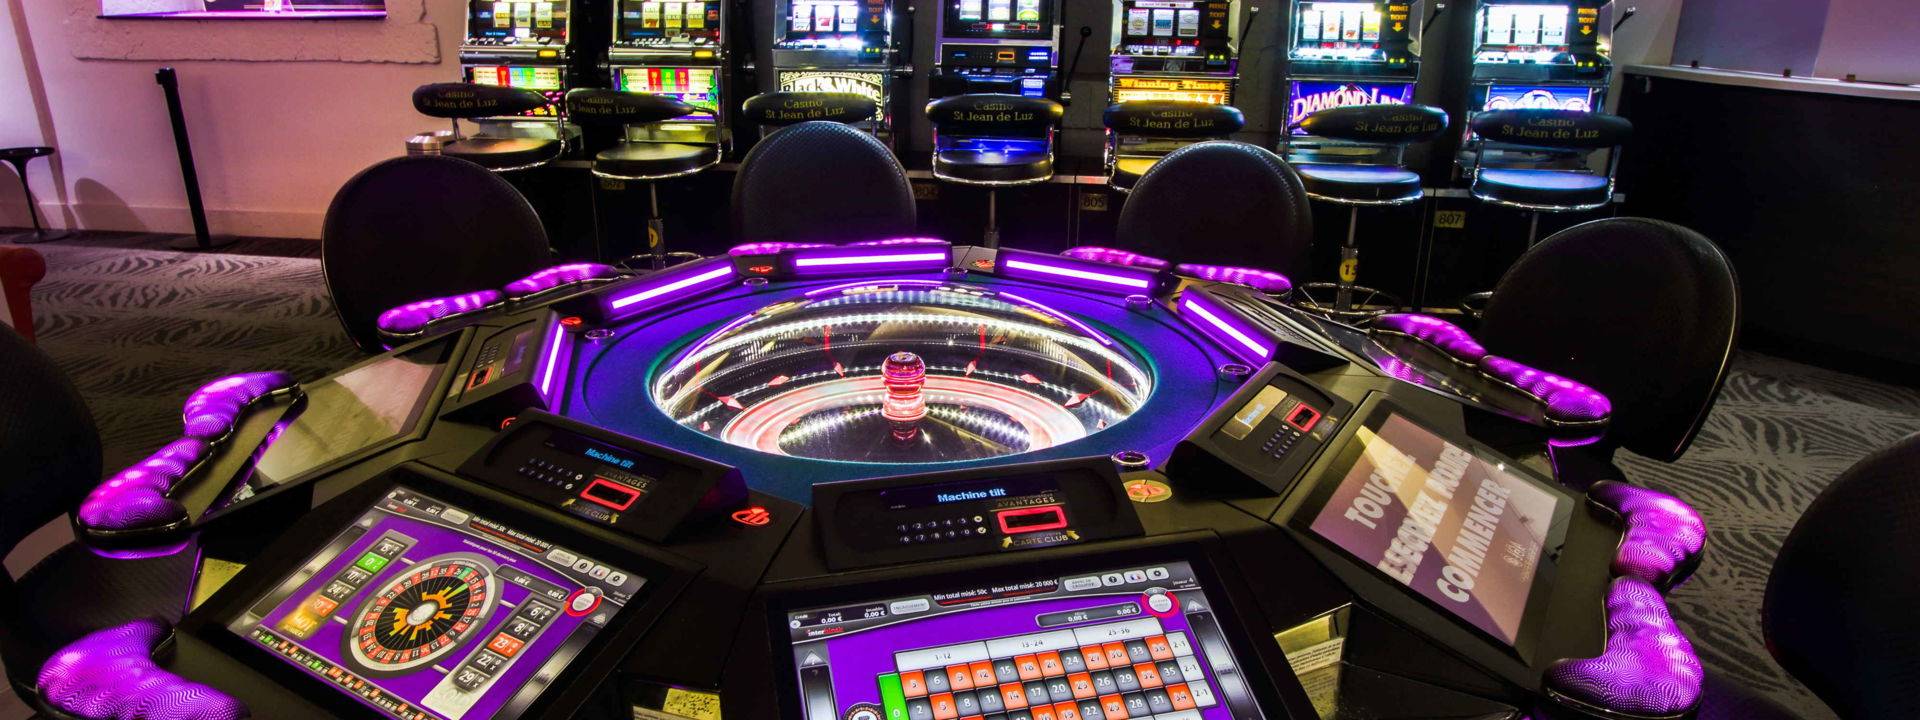 Roulette électronique casino JOA St-Jean-de-Luz